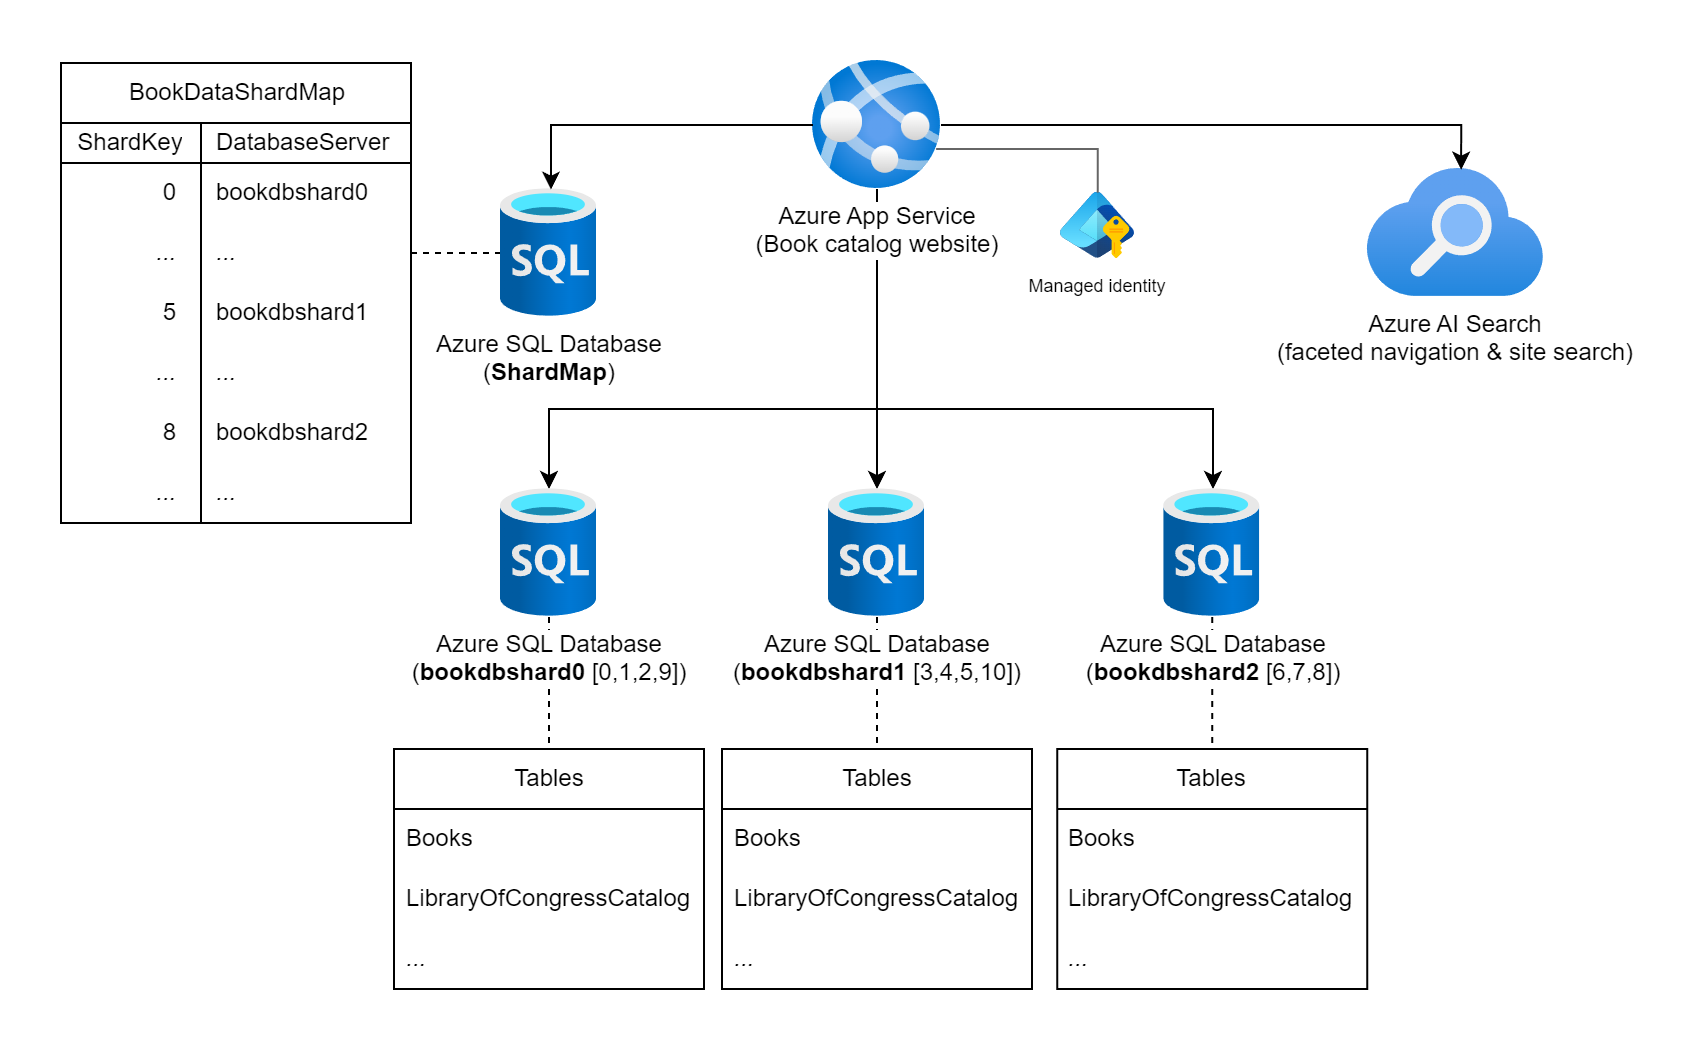 显示一个 Azure App Service、四个 Azure SQL 数据库和一个 Azure AI 搜索的示意图。